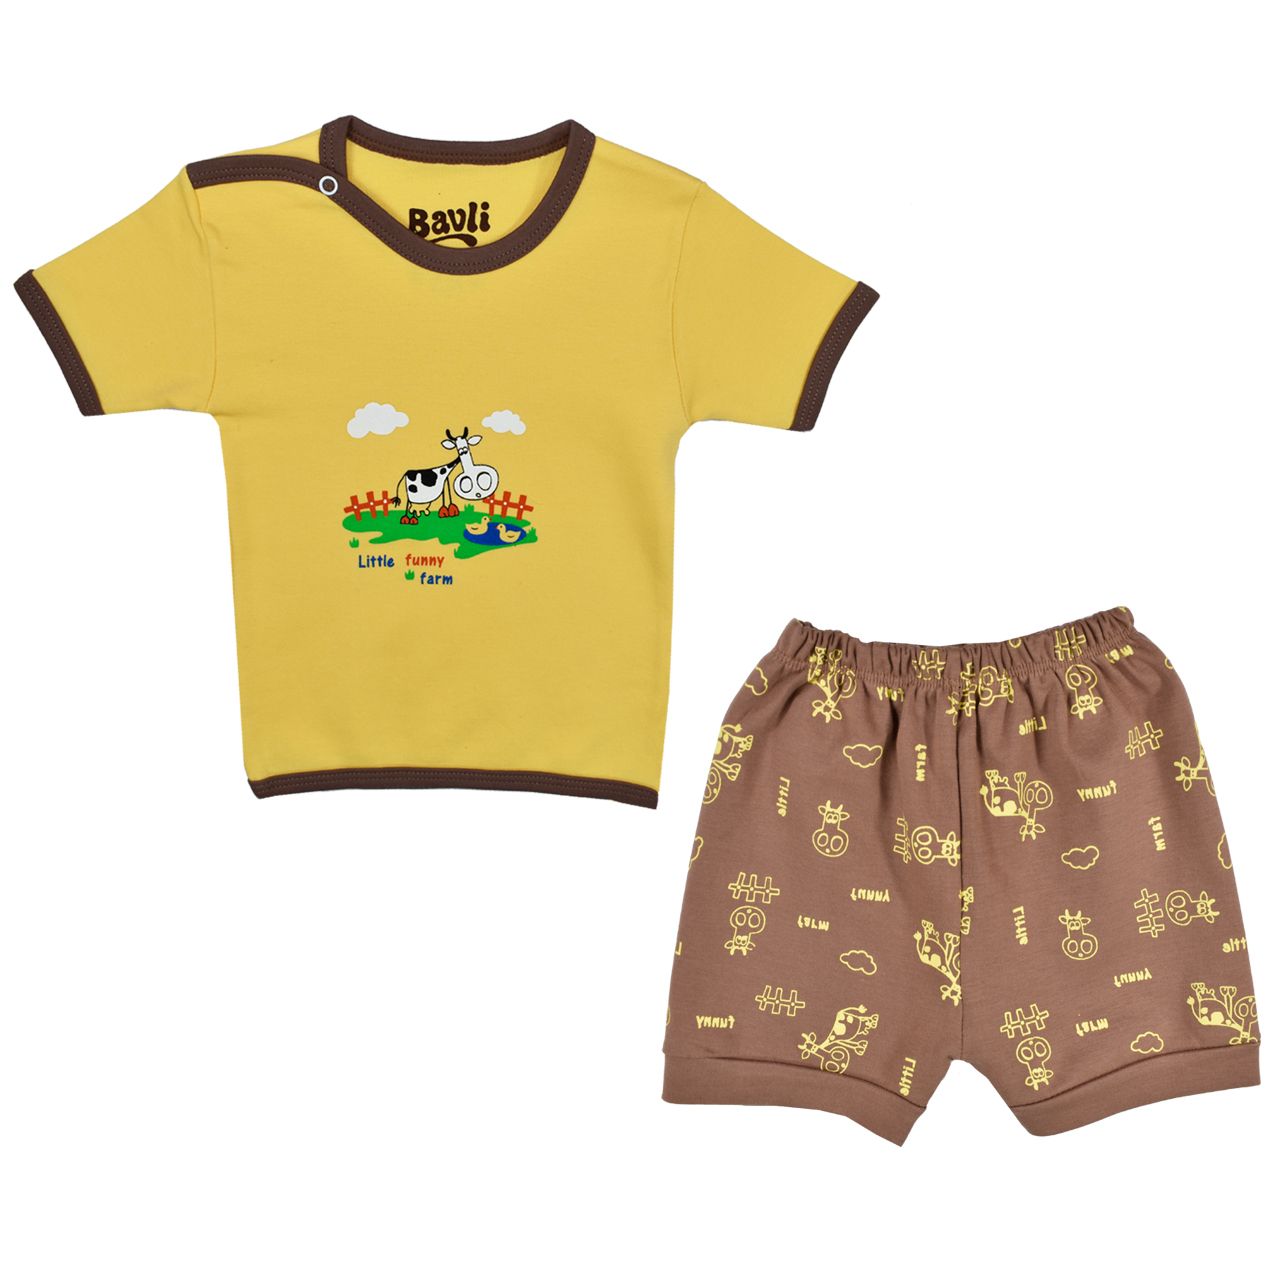 ست تی شرت و شلوارک نوزادی باولی مدل گاو کد 1